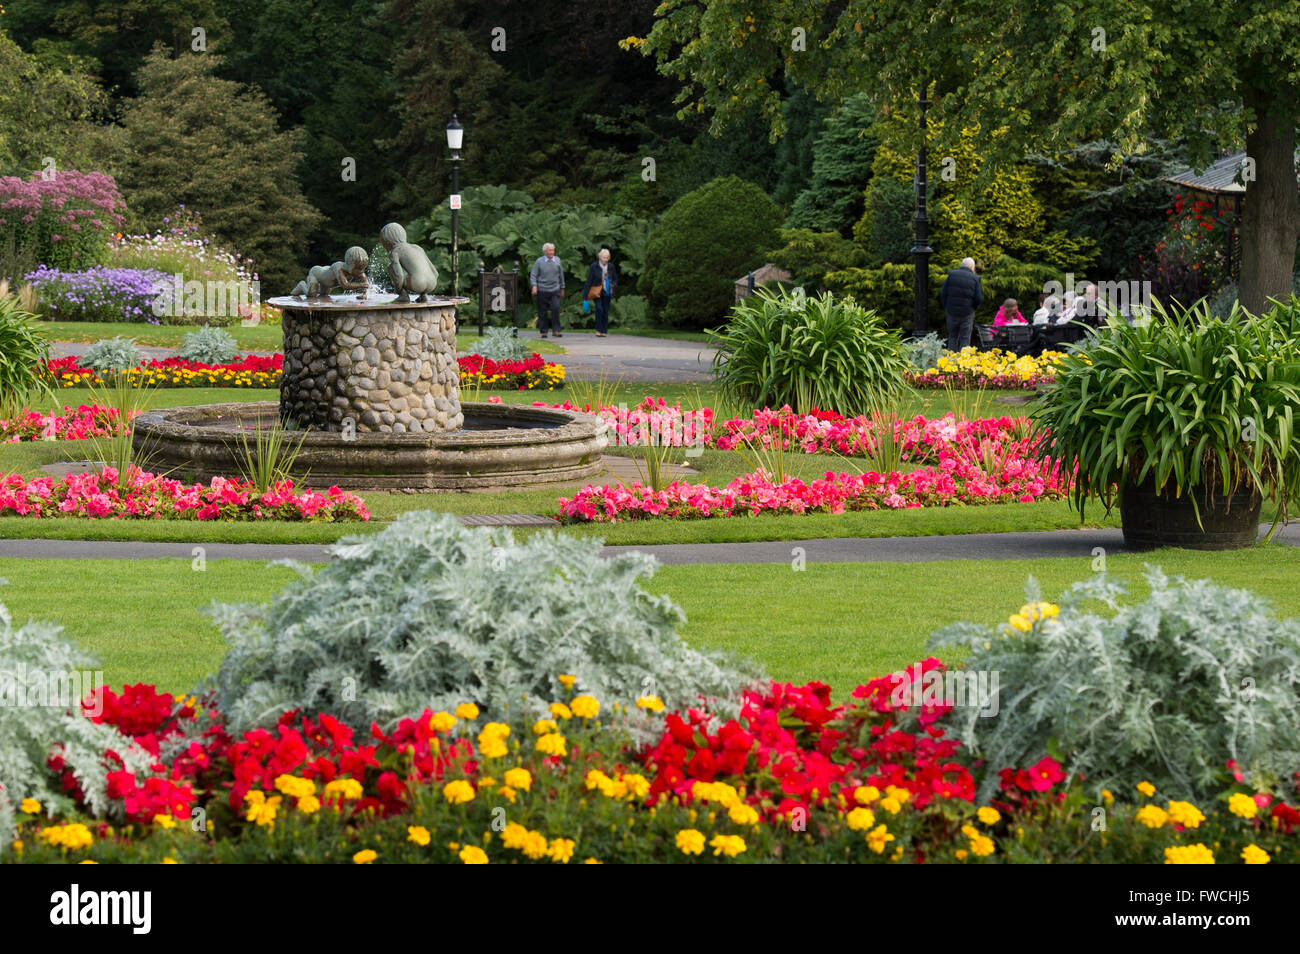 Valley Gardens, Harrogate, Yorkshire, England - schöner Park mit hellen, bunten Blumenbeeten, Brunnen und Menschen entspannen. Stockfoto